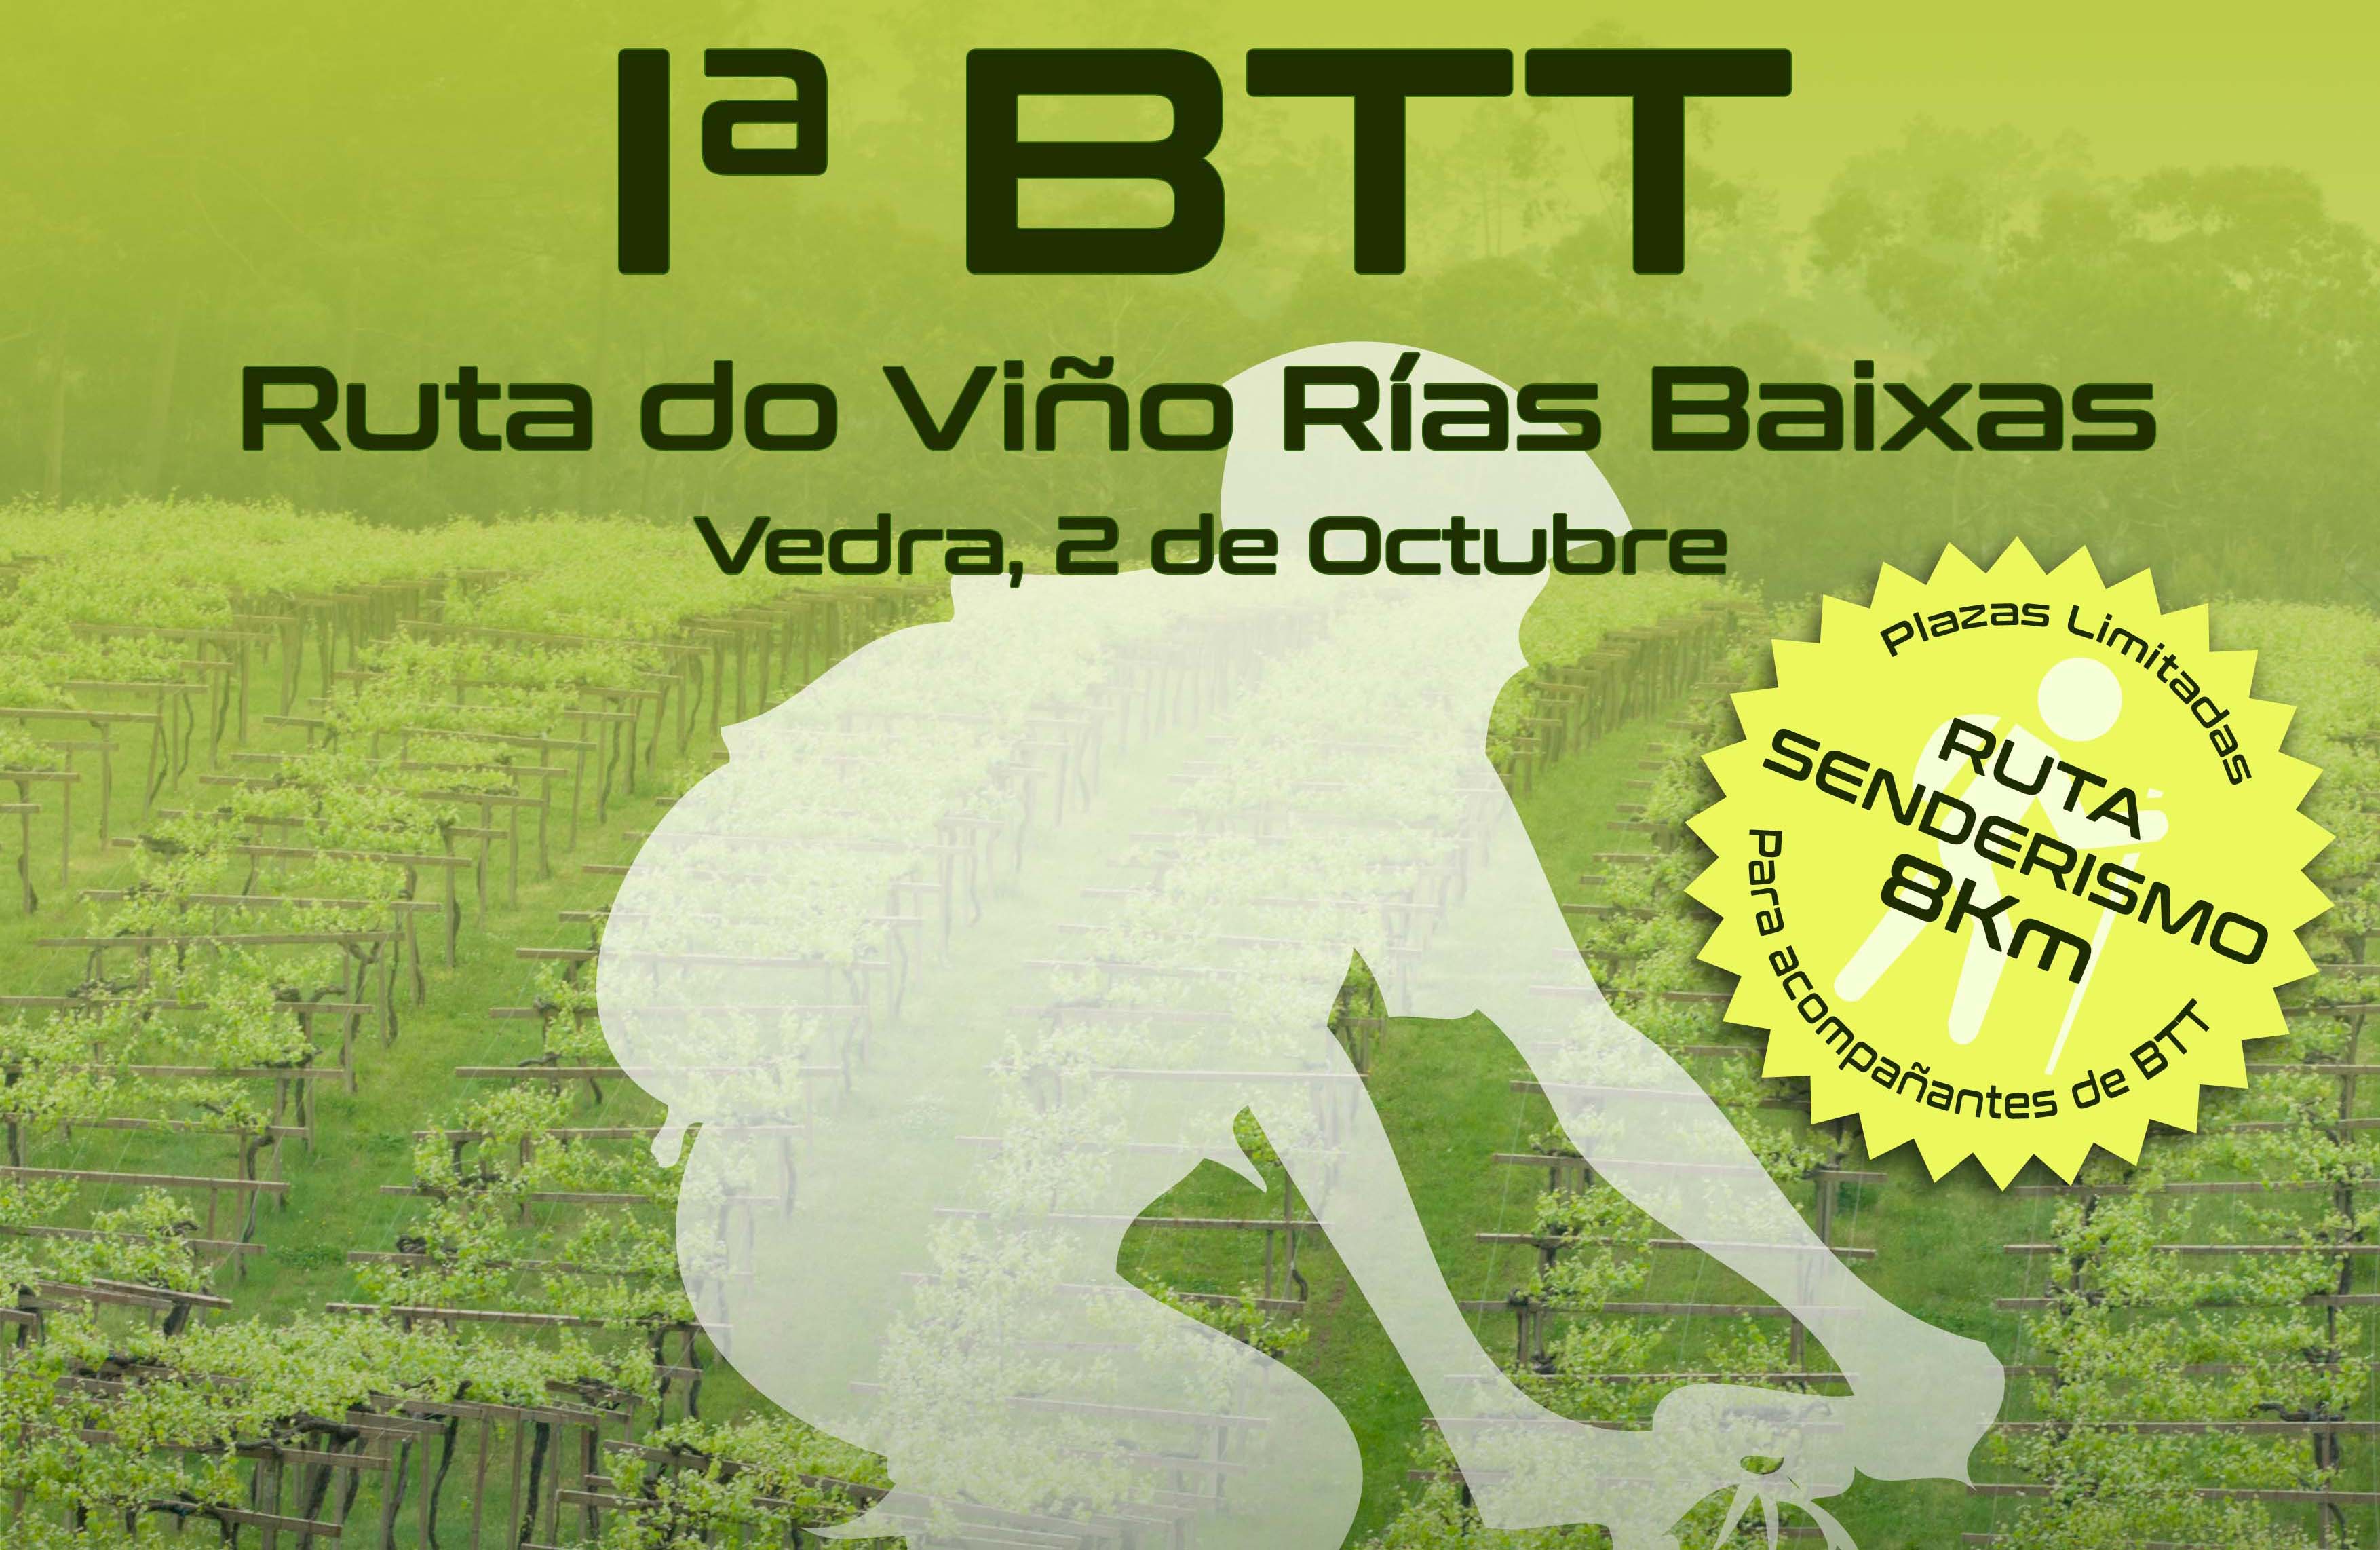 Nueva fecha para la primera BTT de la Ruta do Viño Rías Baixas que tendrá lugar el 2 de octubre en Vedra